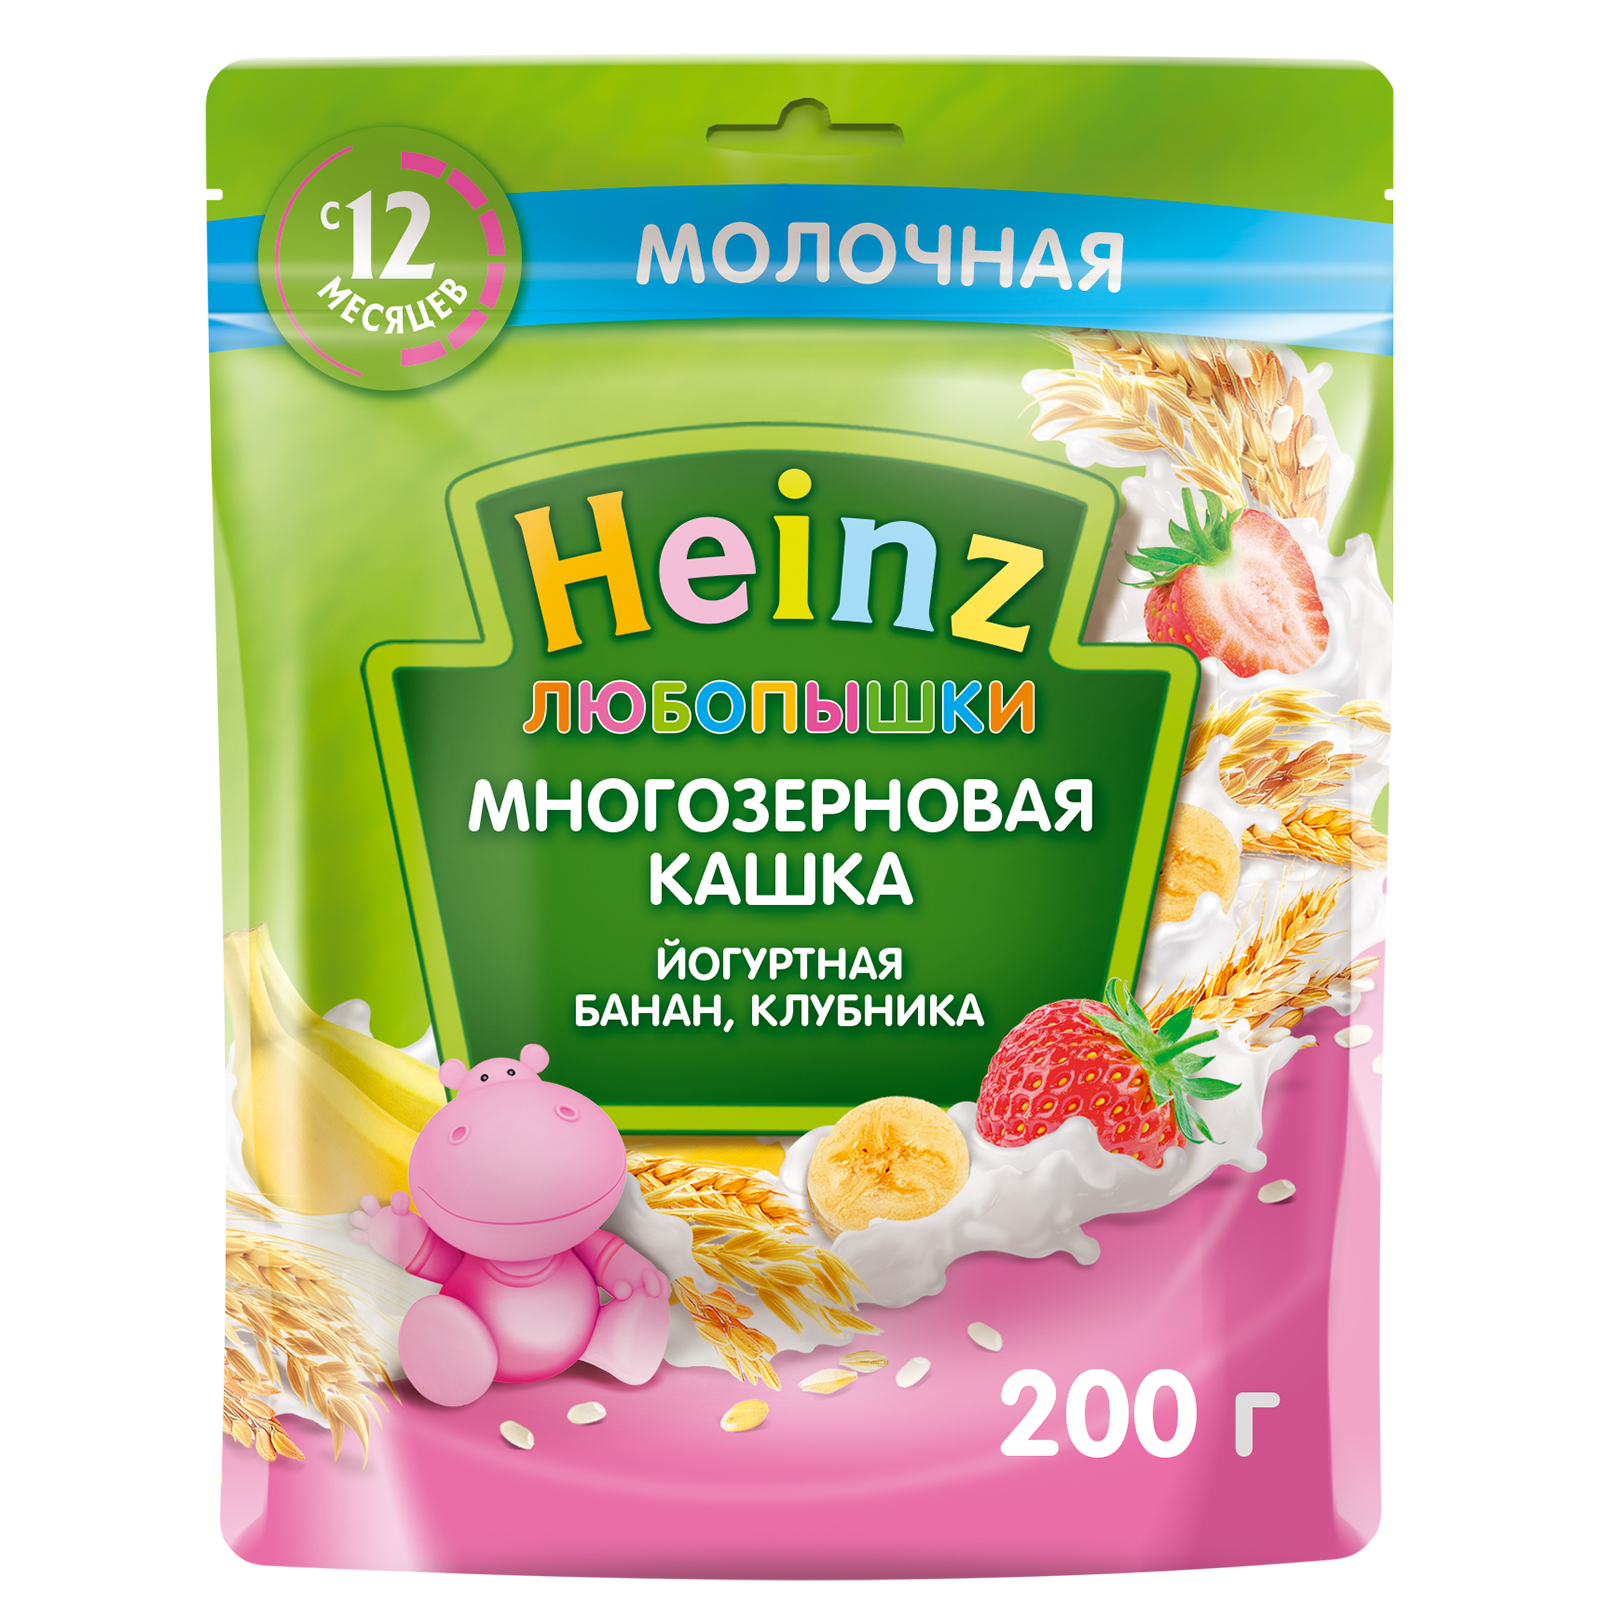 Каша Heinz йогуртная многозерновая банан, клубника c 12-ти месяцев 200 г